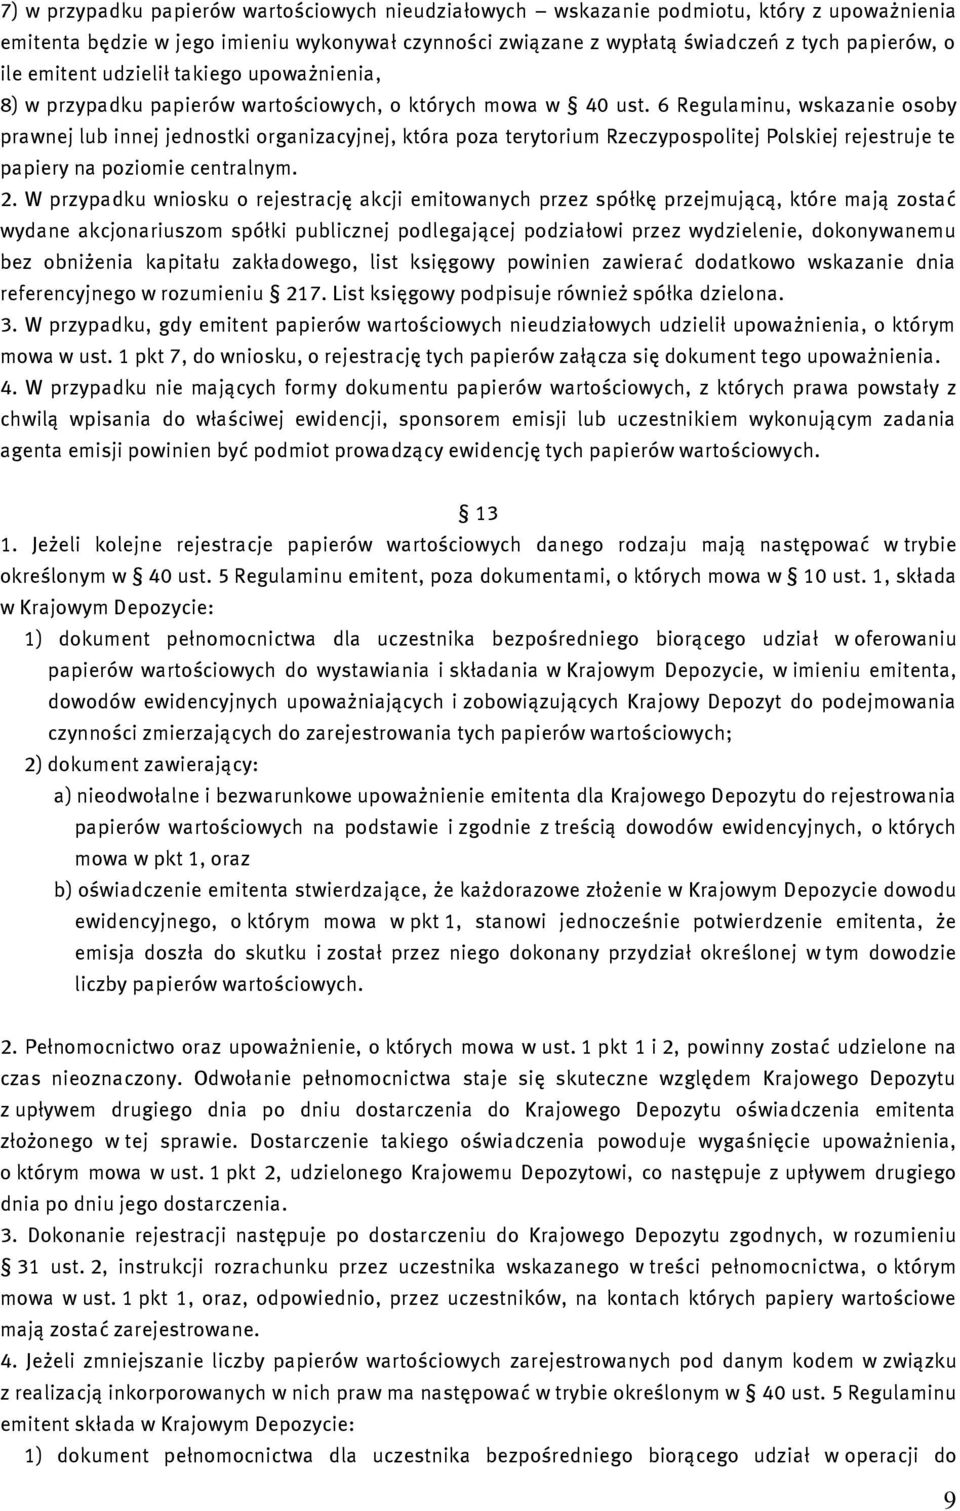 6 Regulaminu, wskazanie osoby prawnej lub innej jednostki organizacyjnej, która poza terytorium Rzeczypospolitej Polskiej rejestruje te papiery na poziomie centralnym. 2.